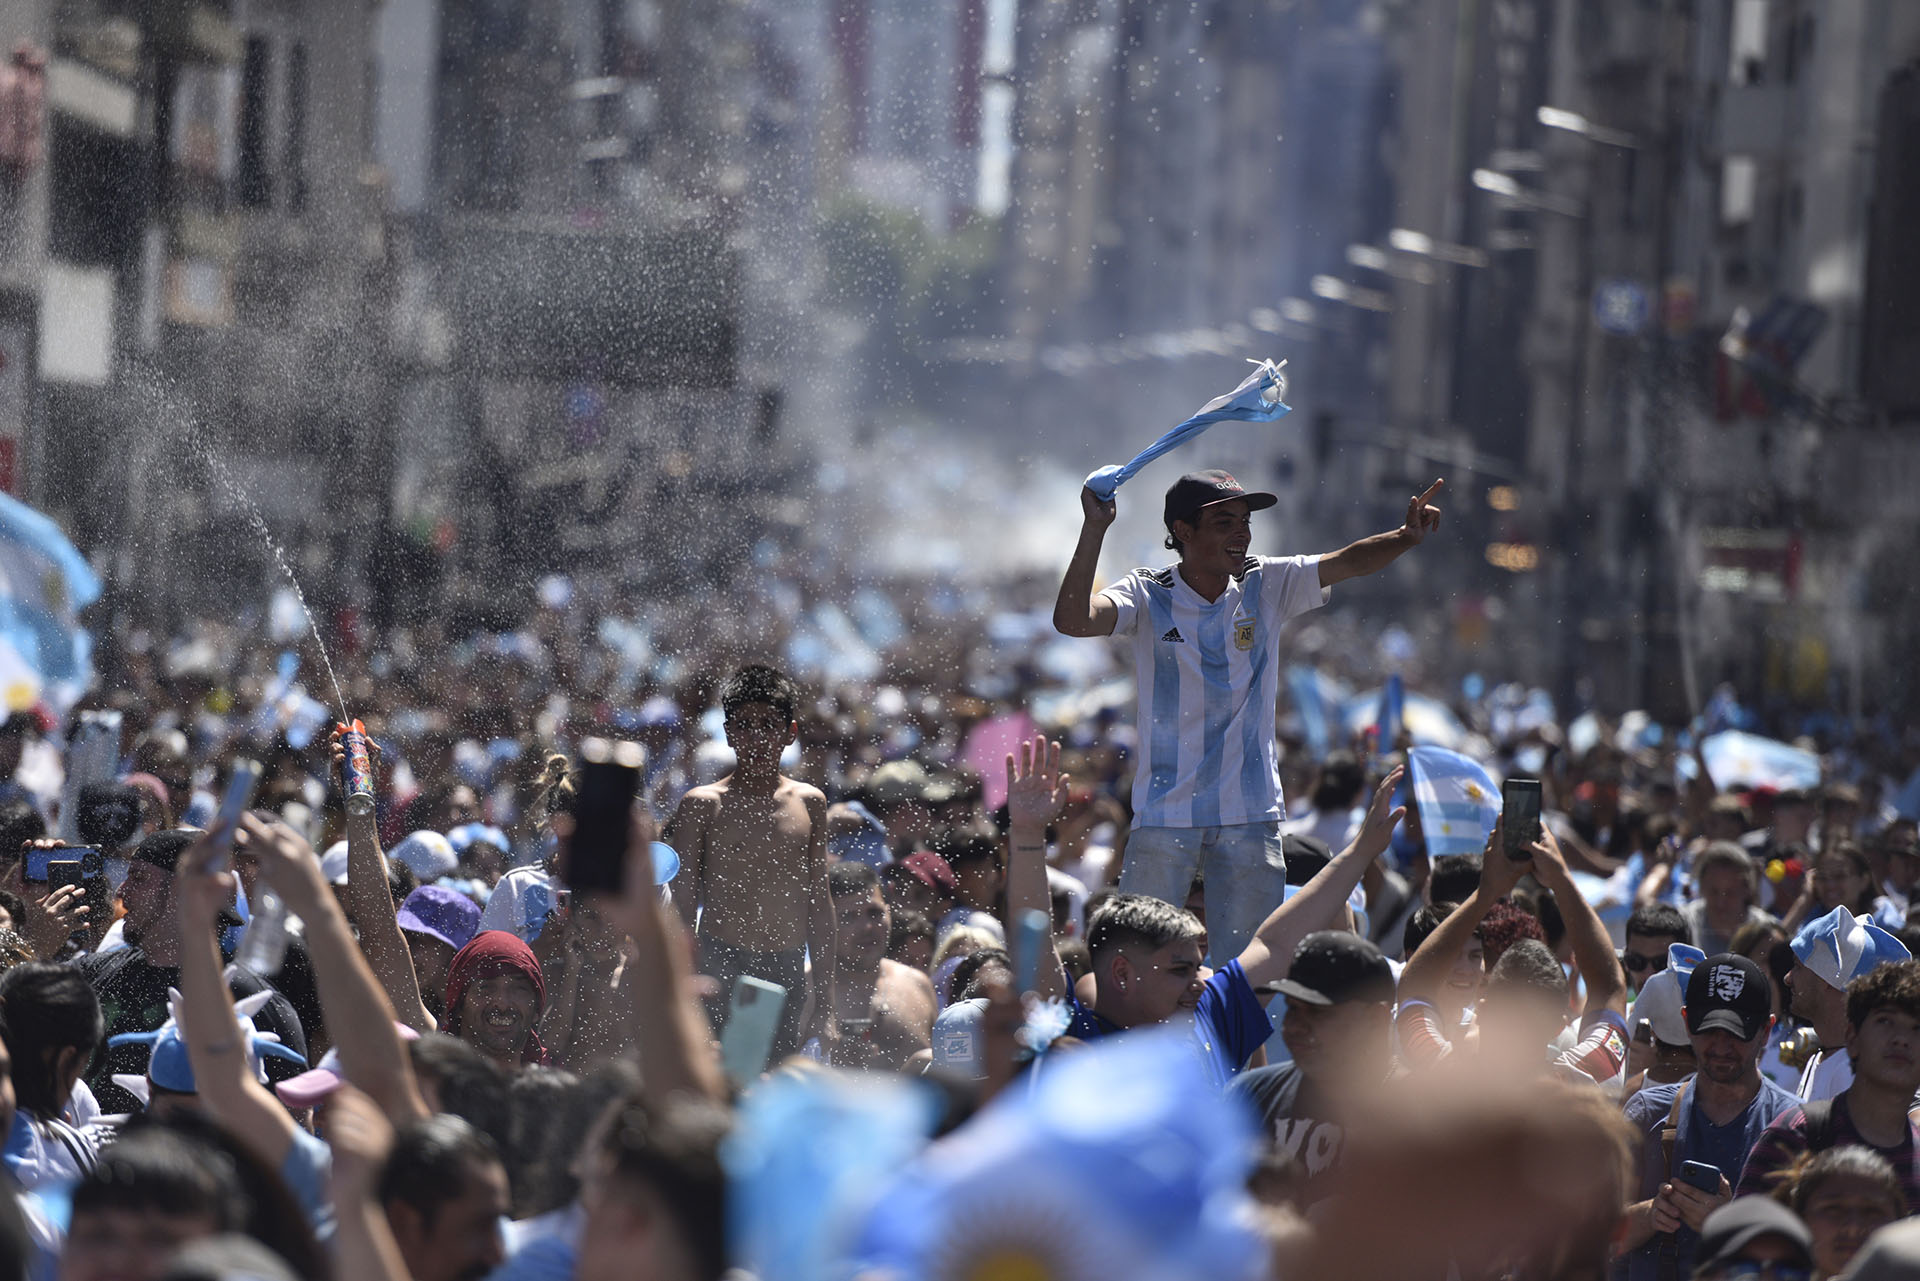 La avenida Corrientes se convirtió en una mar de gente vestida de celeste y blanco